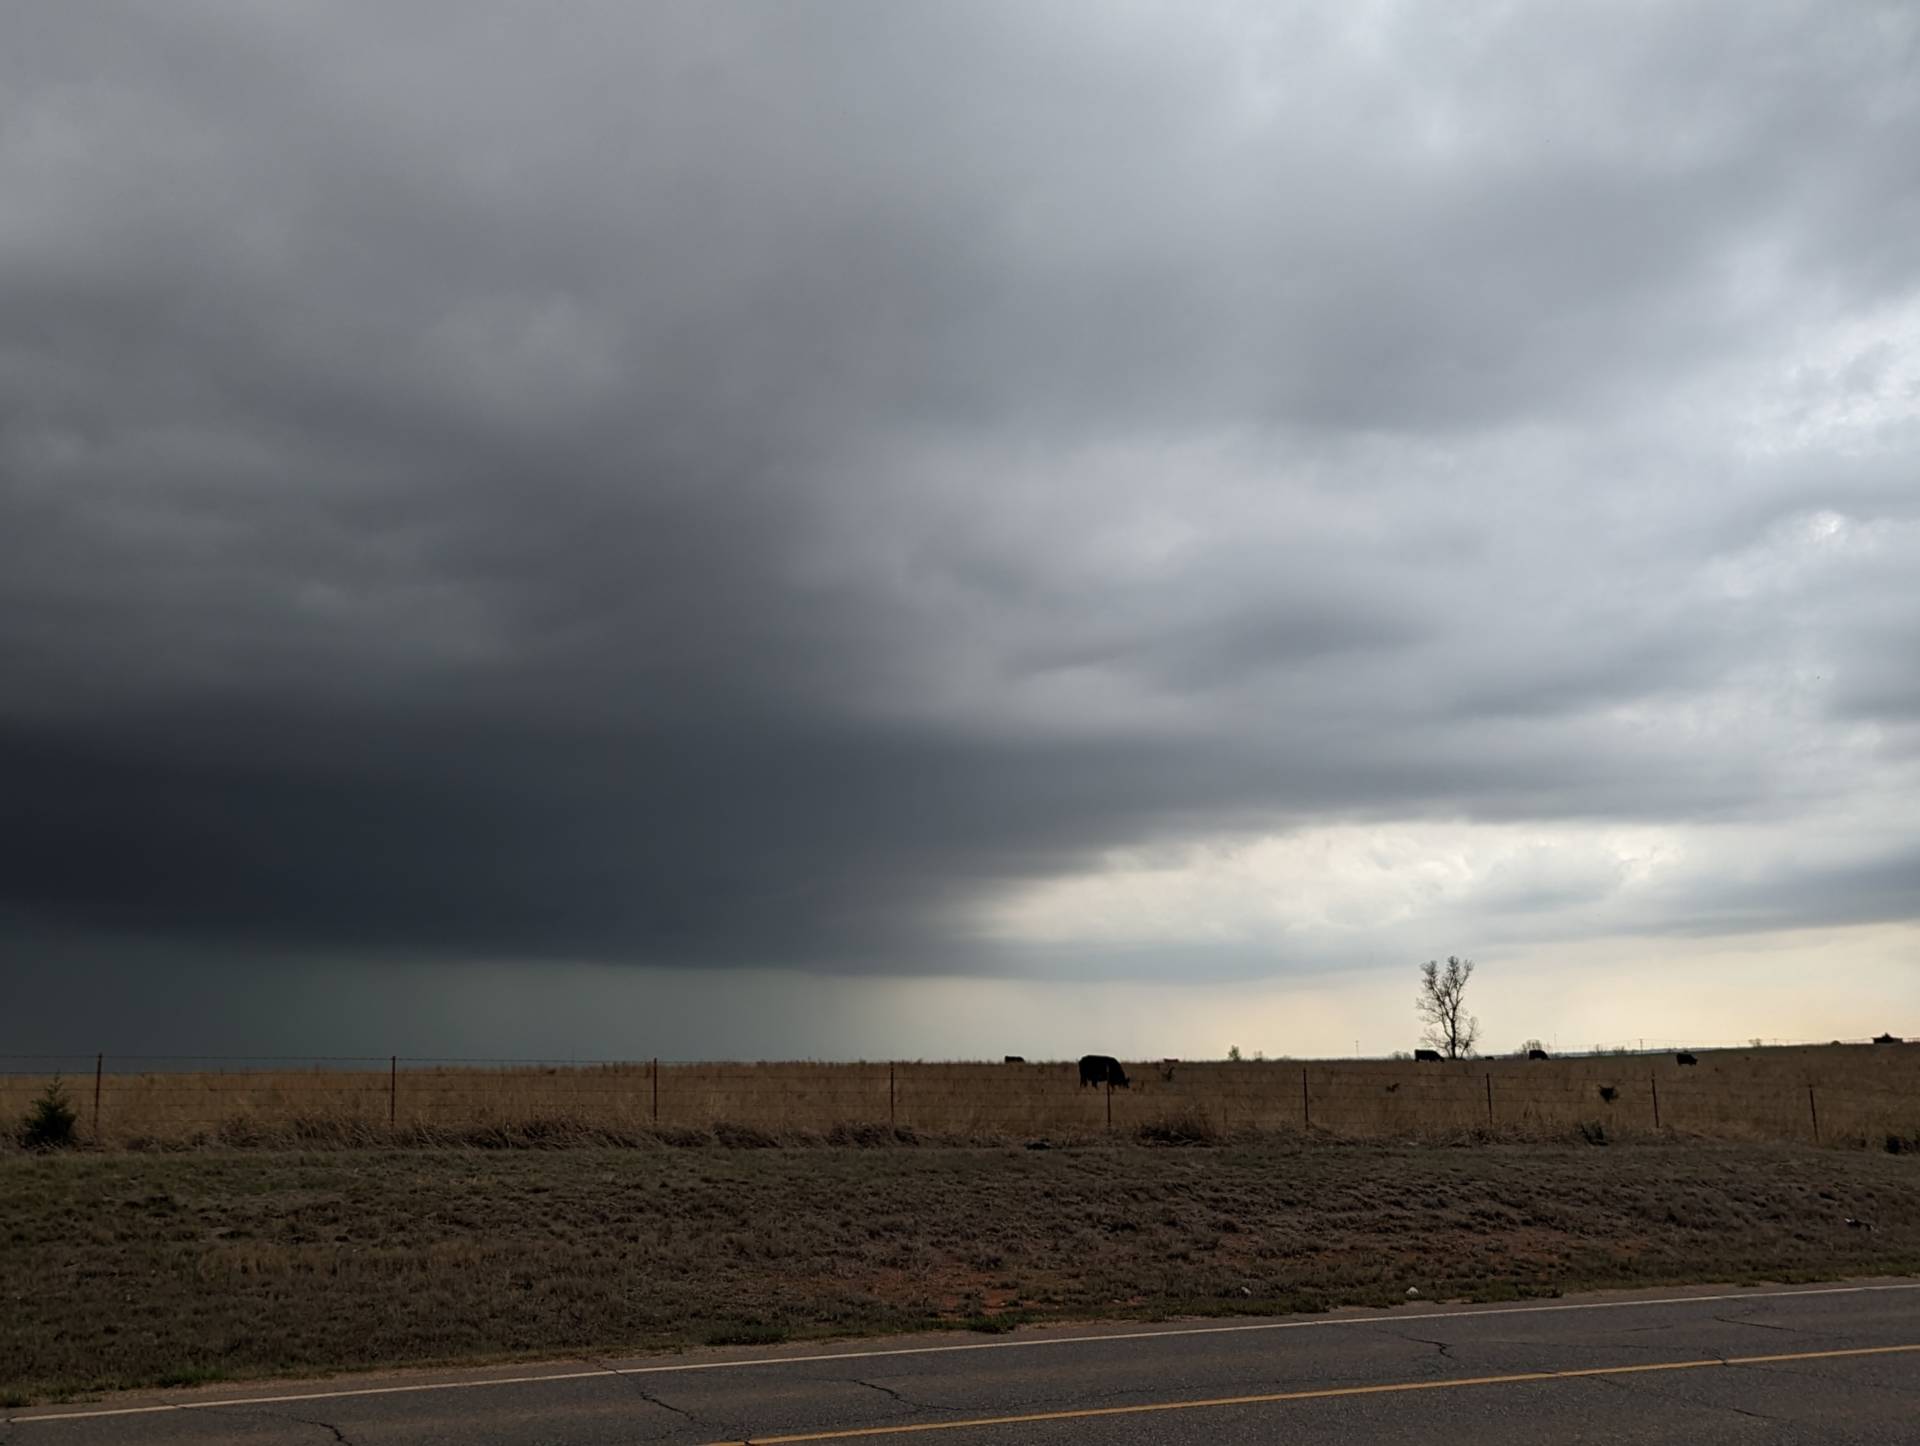 Severe storm near Lovell, Oklahoma. #okwx